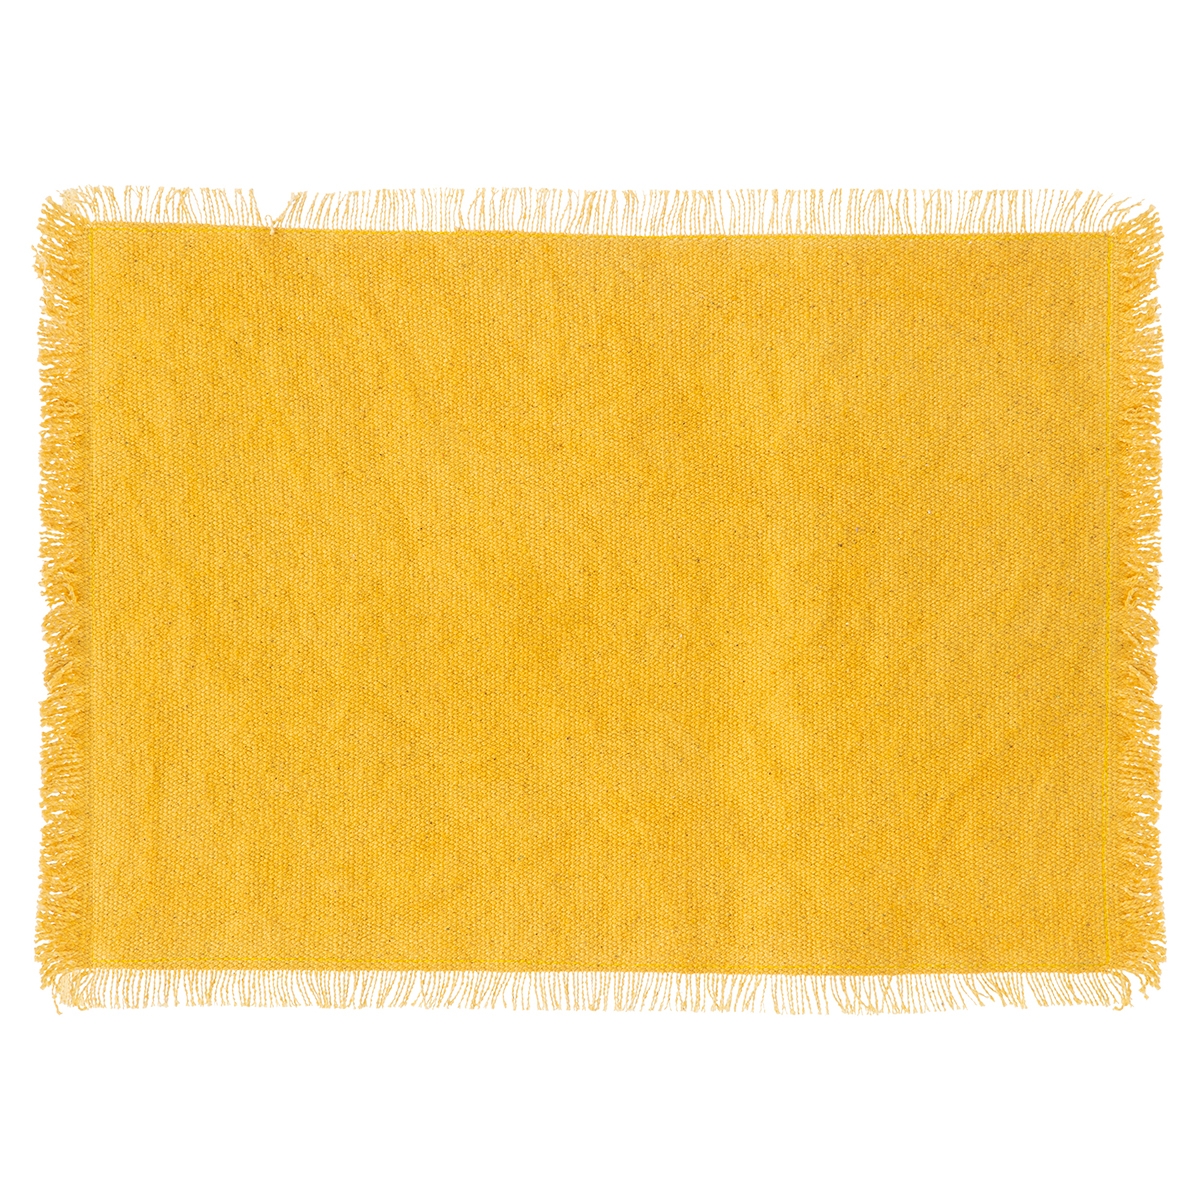 Σουπλά (30x45) S-D Maha 188807C Yellow